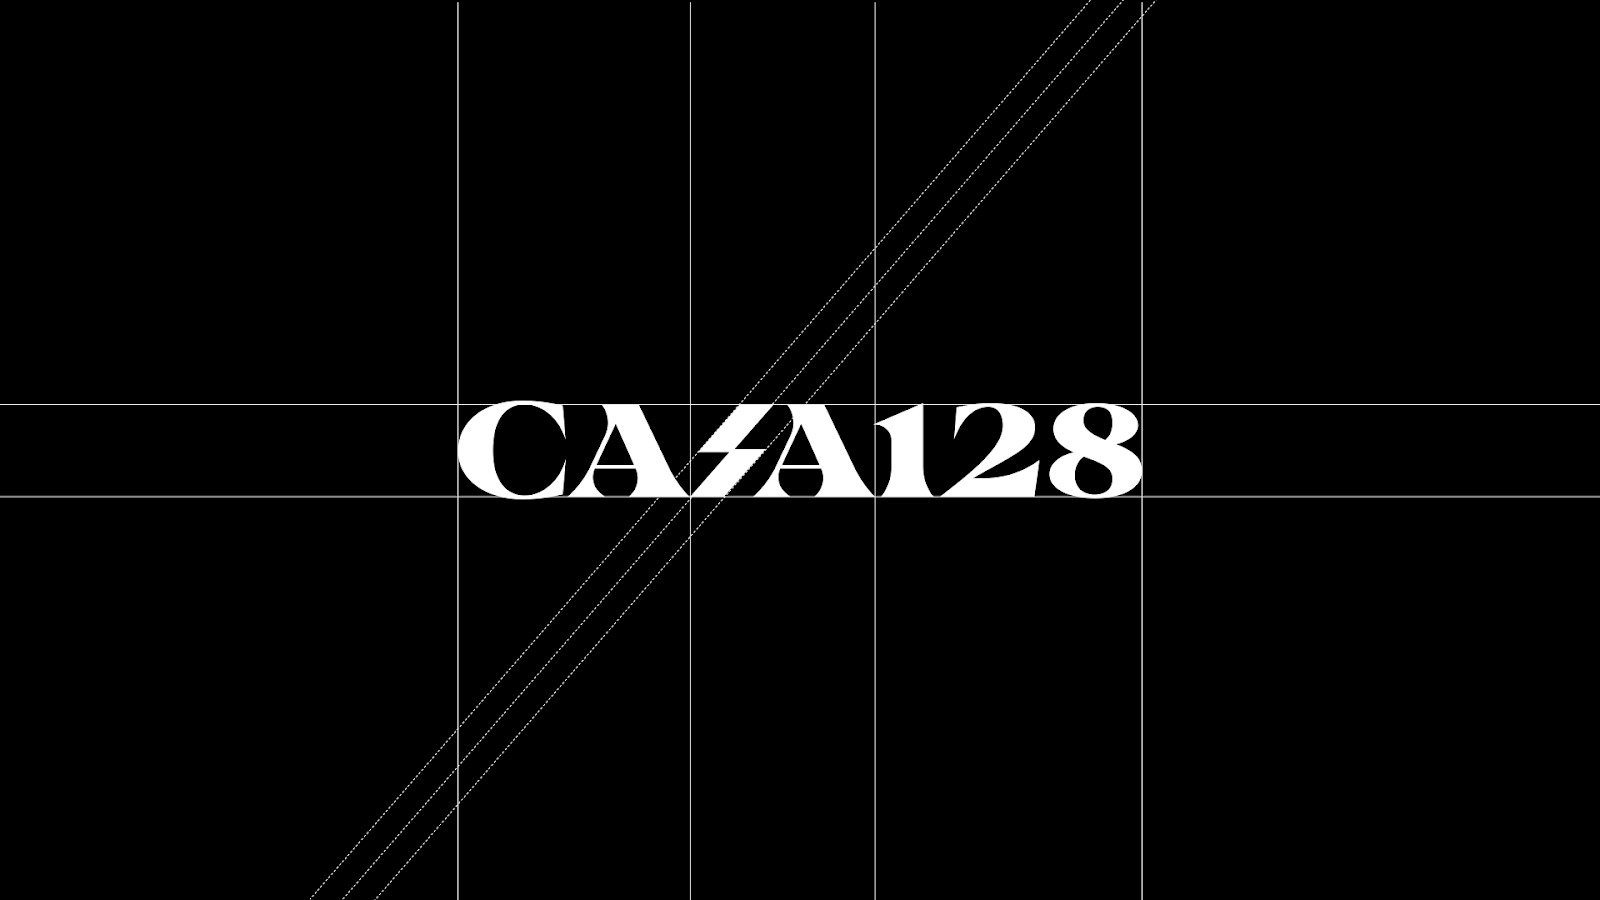 时尚品牌Casa 128视觉形象设计